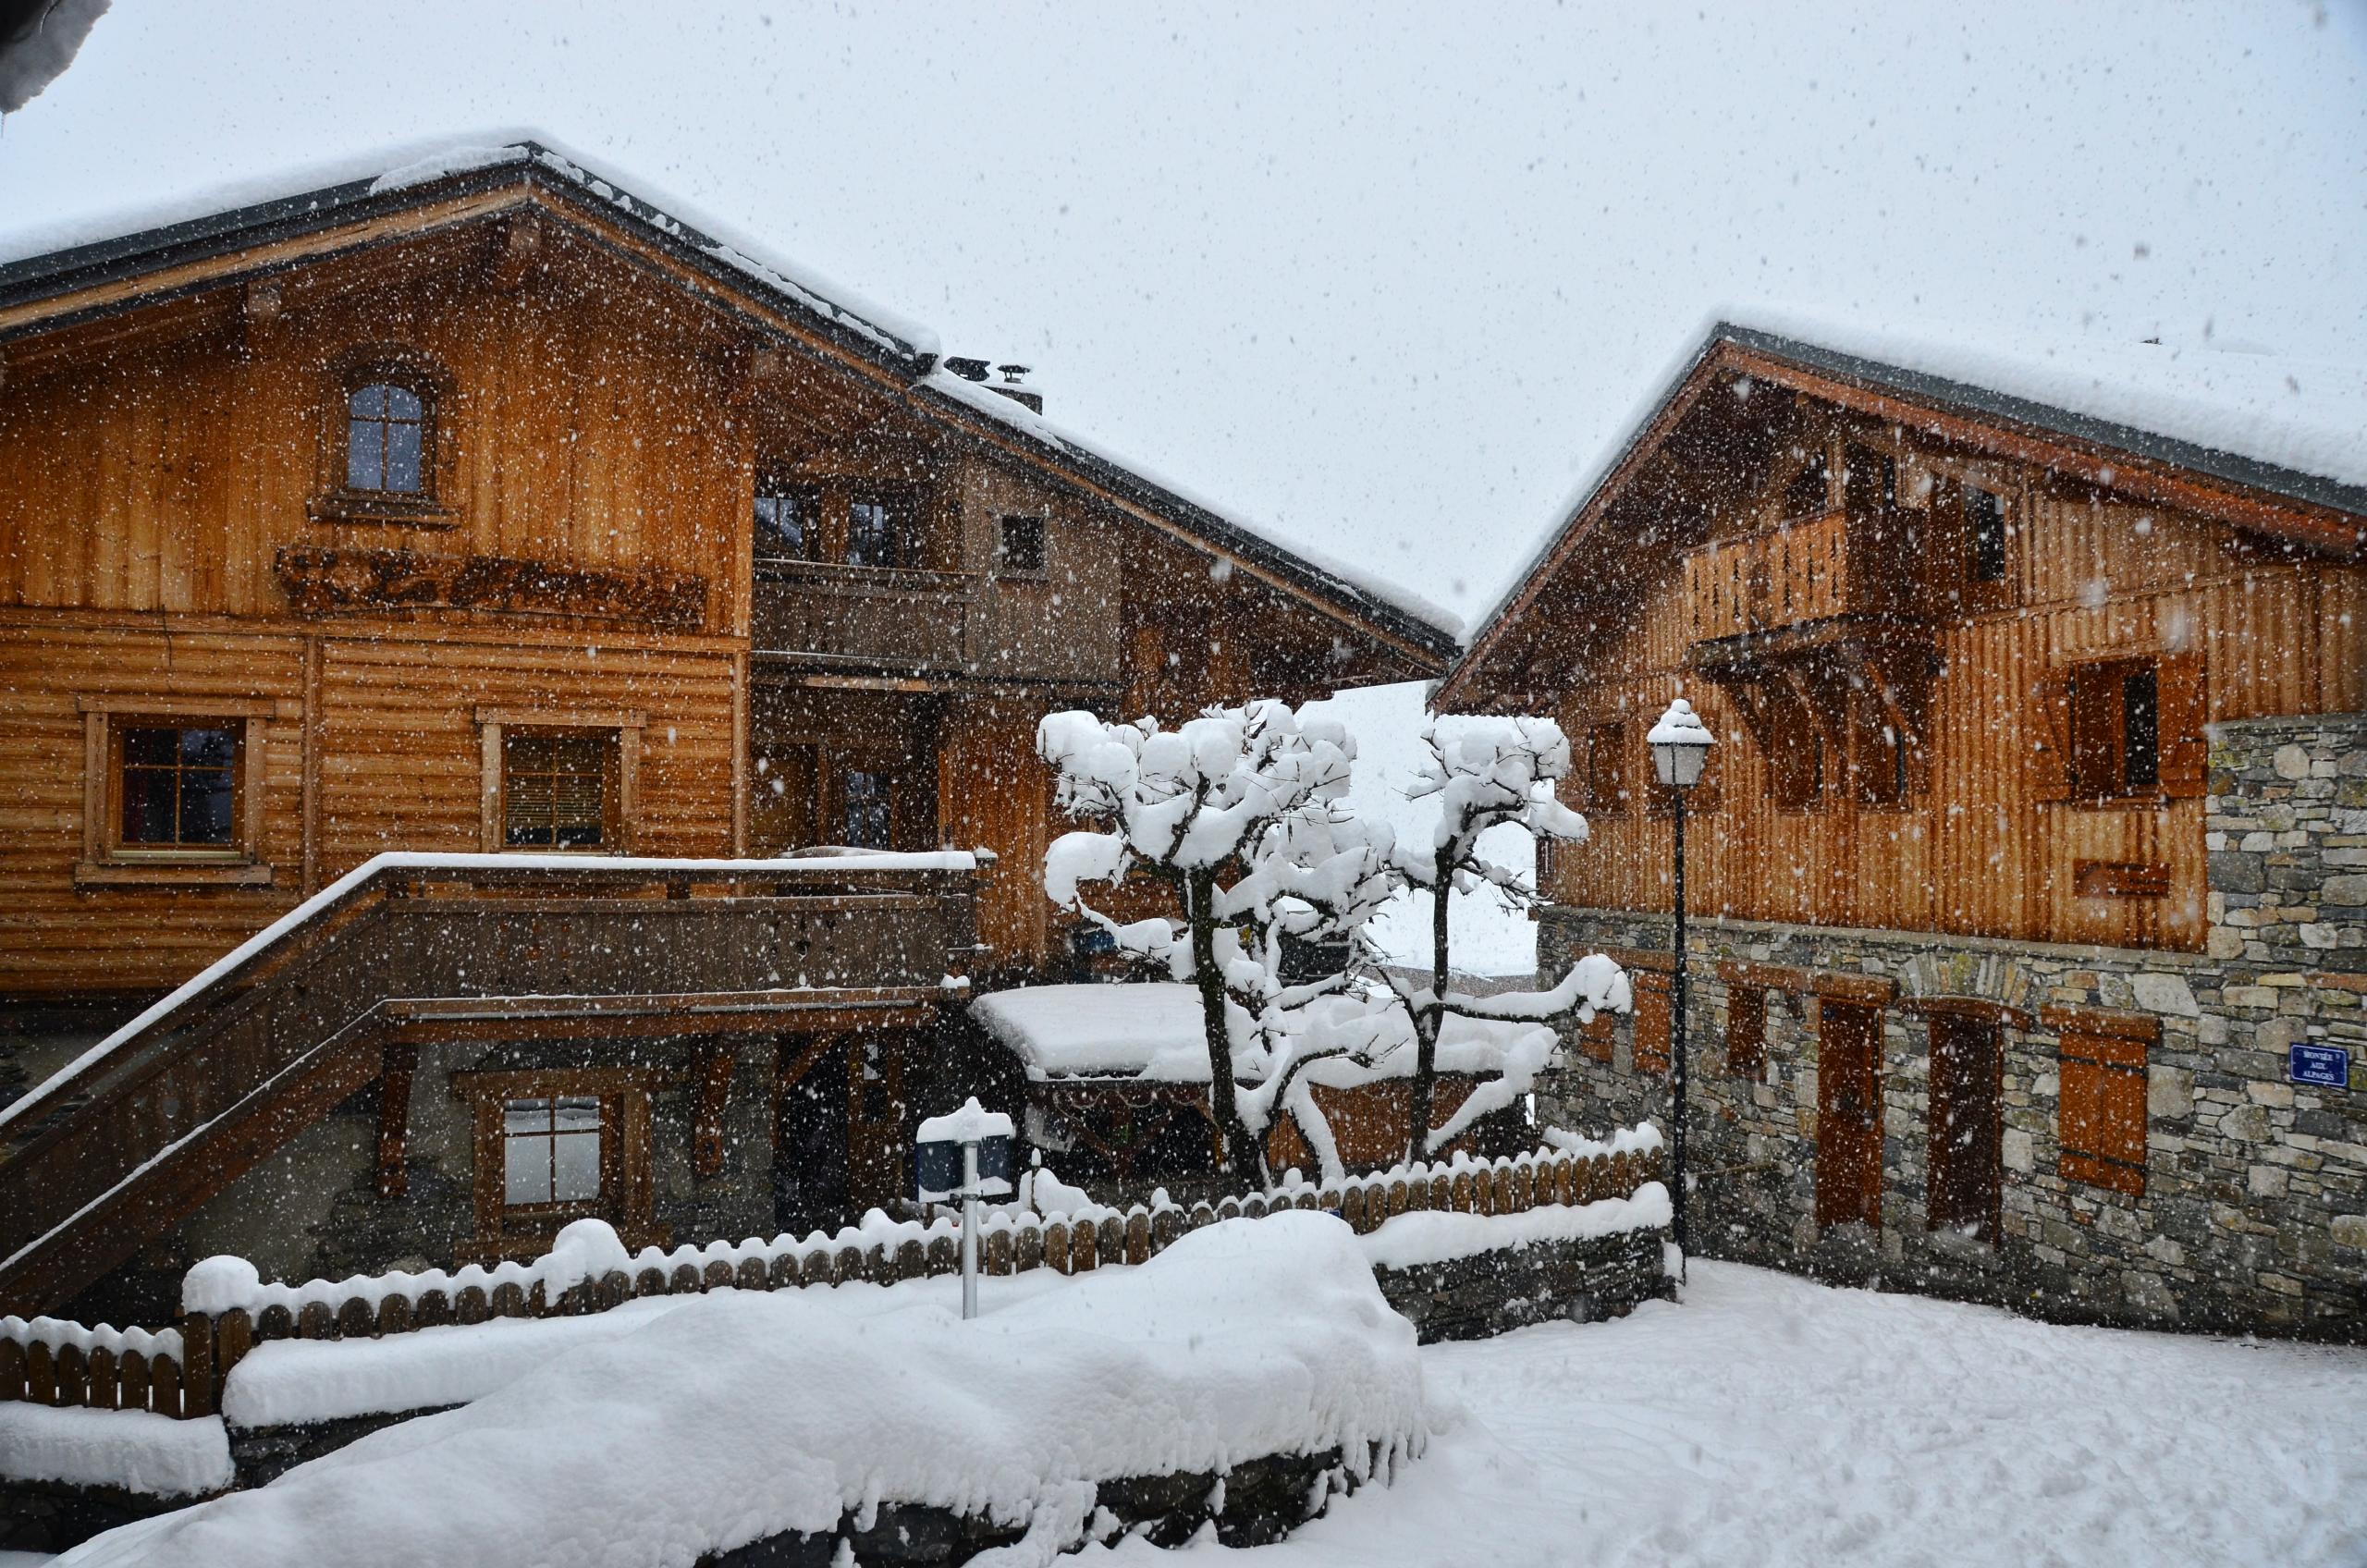 ski resort Montchavin La Plagne